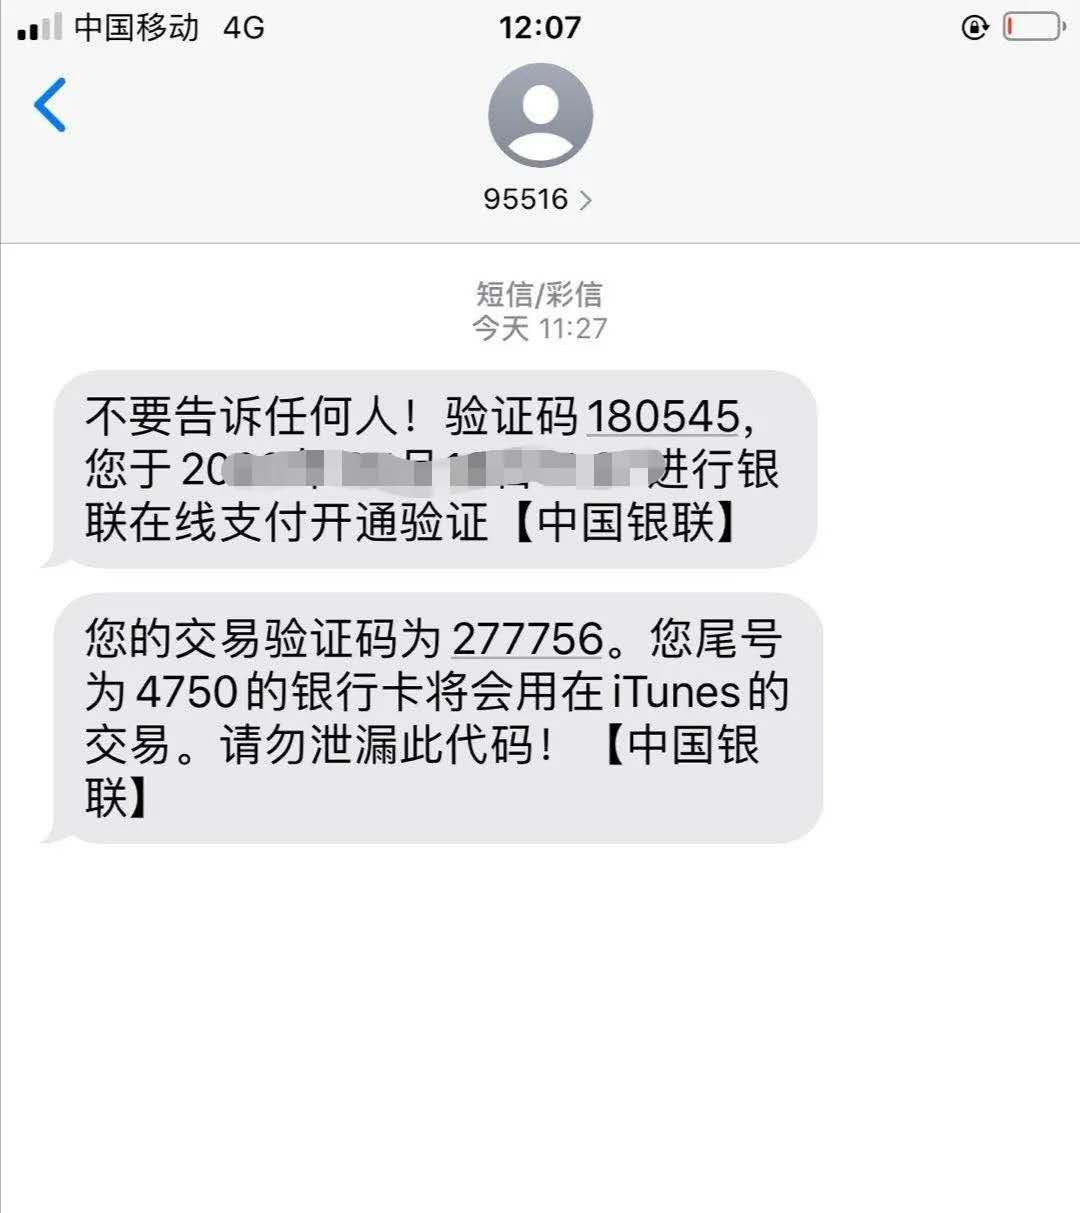 中国银联发来的真实验证码短信 长沙公安刑侦供图